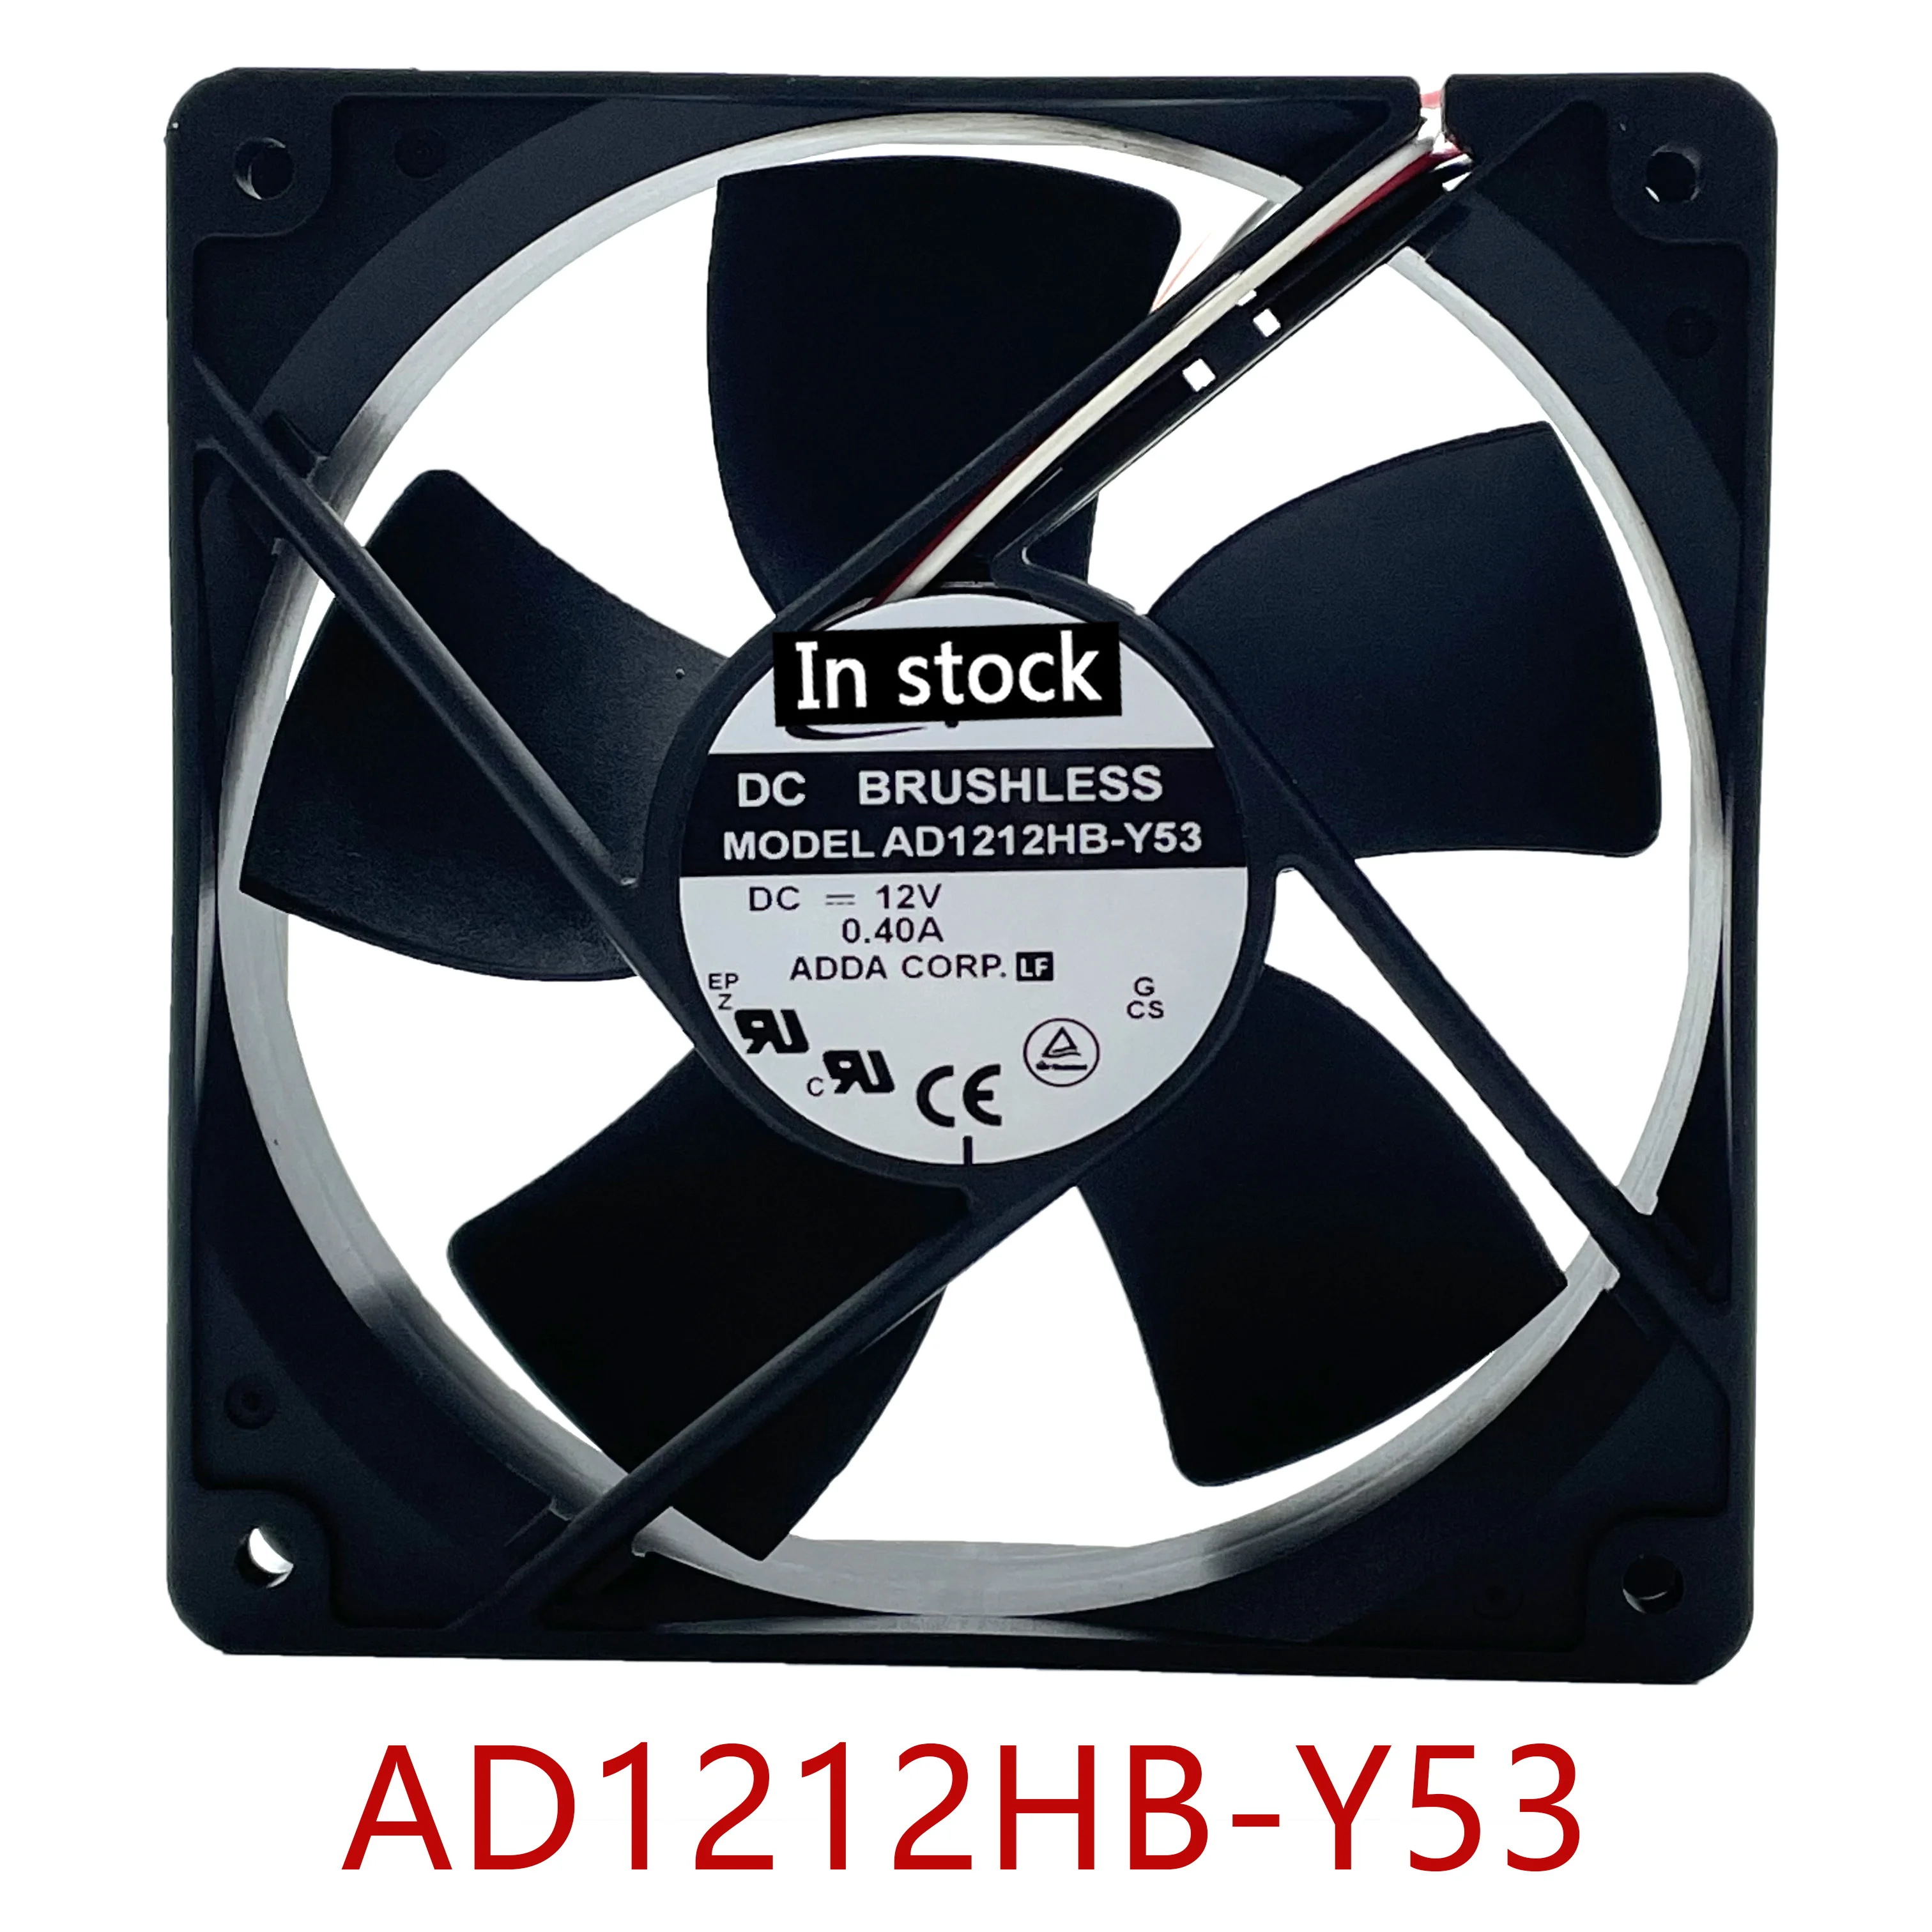 

Original 100% working AD1212HB-Y53 G DC 12V 0.40A 3-Wire 120x120x32mm Server Cooling Fan